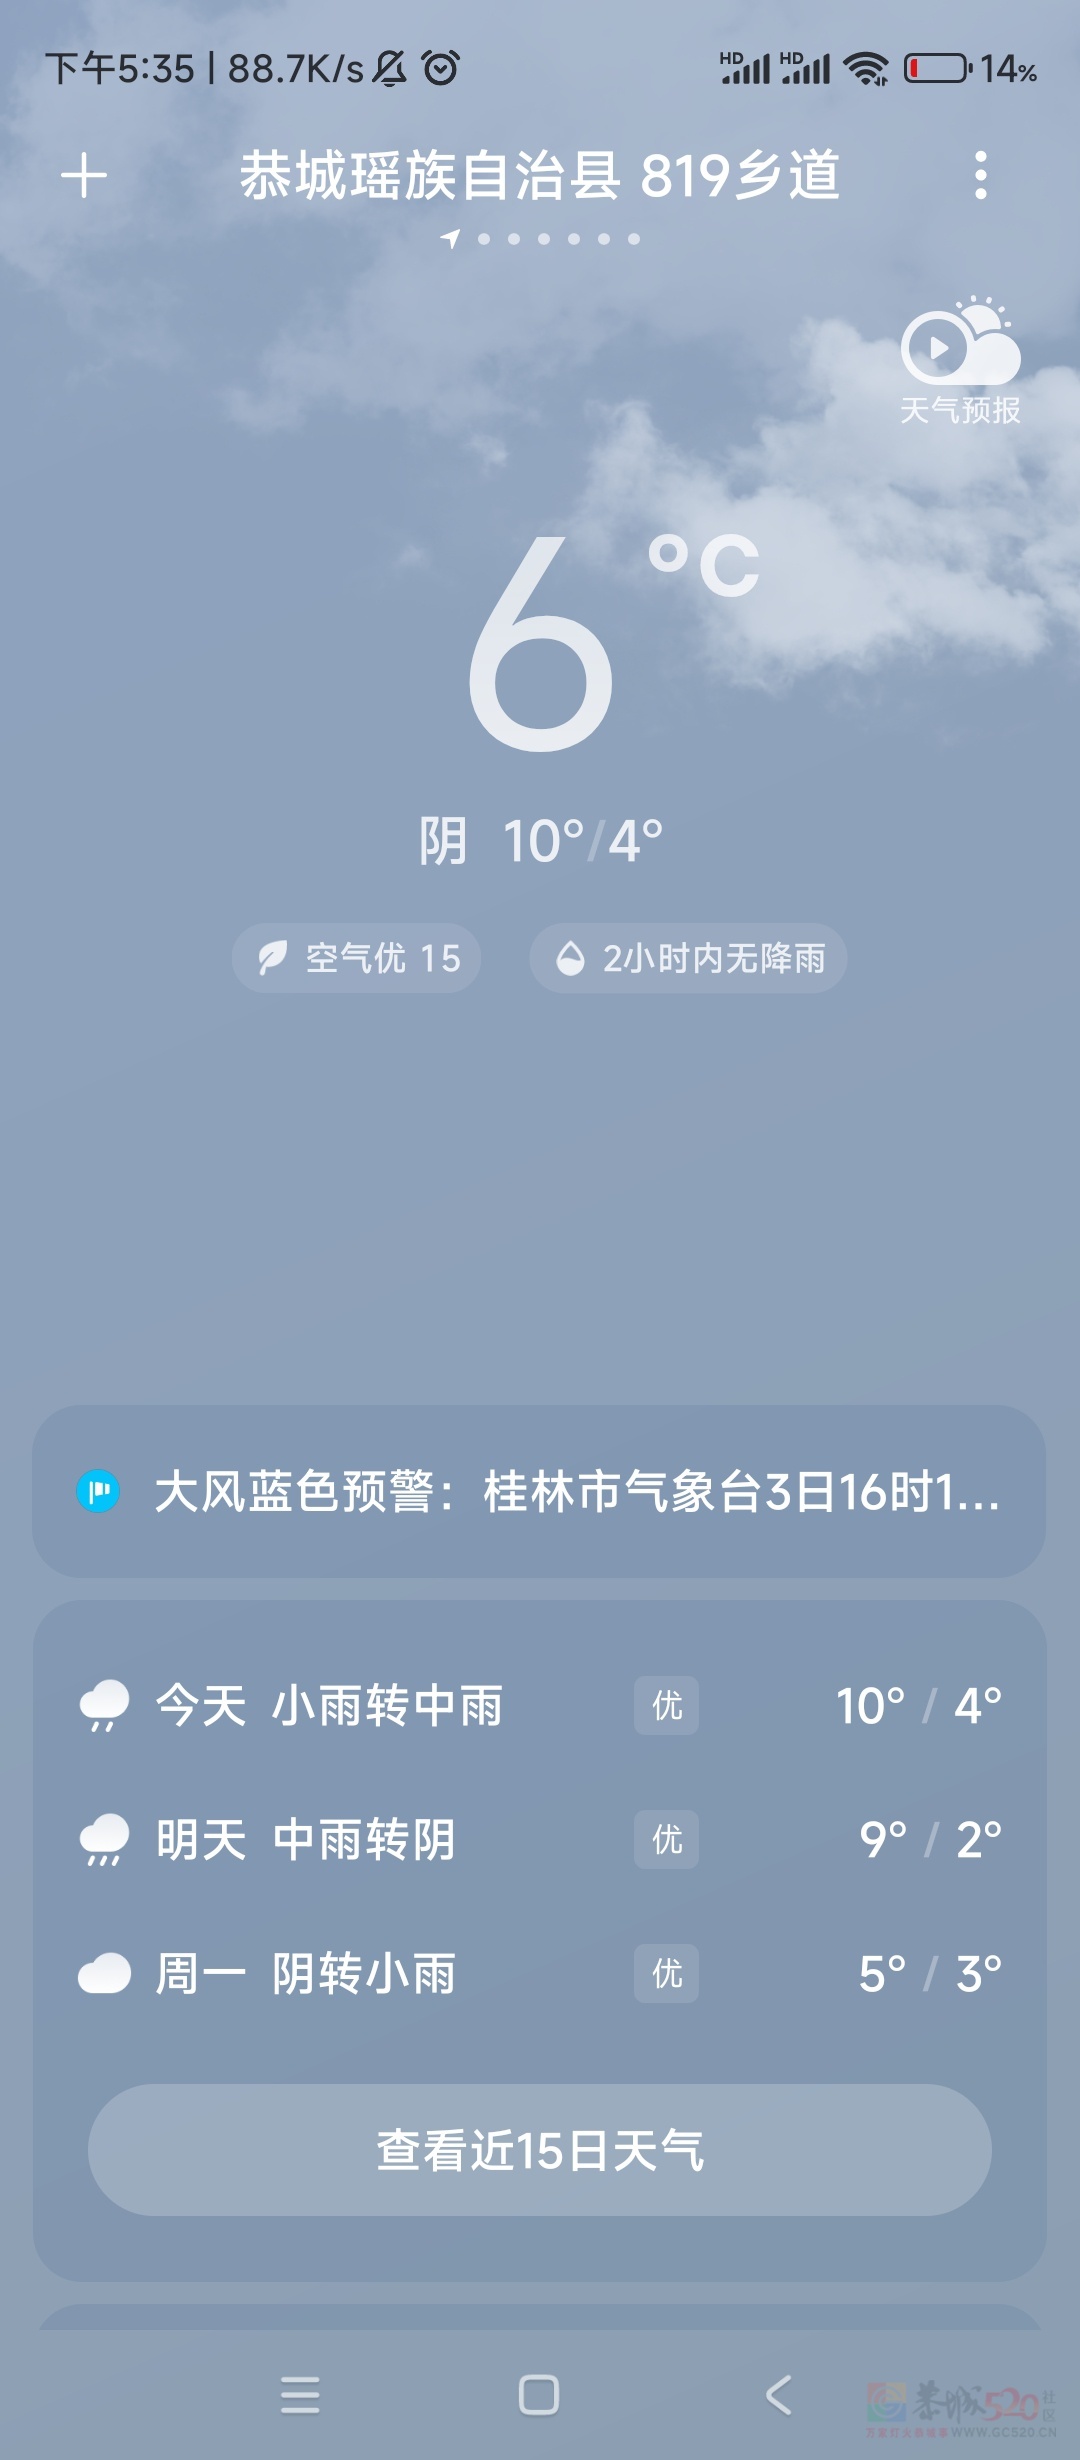 太冷了，还没有回家的都不要回来了。
 
刚从广东回来。马上要回广东了，这个太冷了968 / 作者:太冷了 / 帖子ID:313468